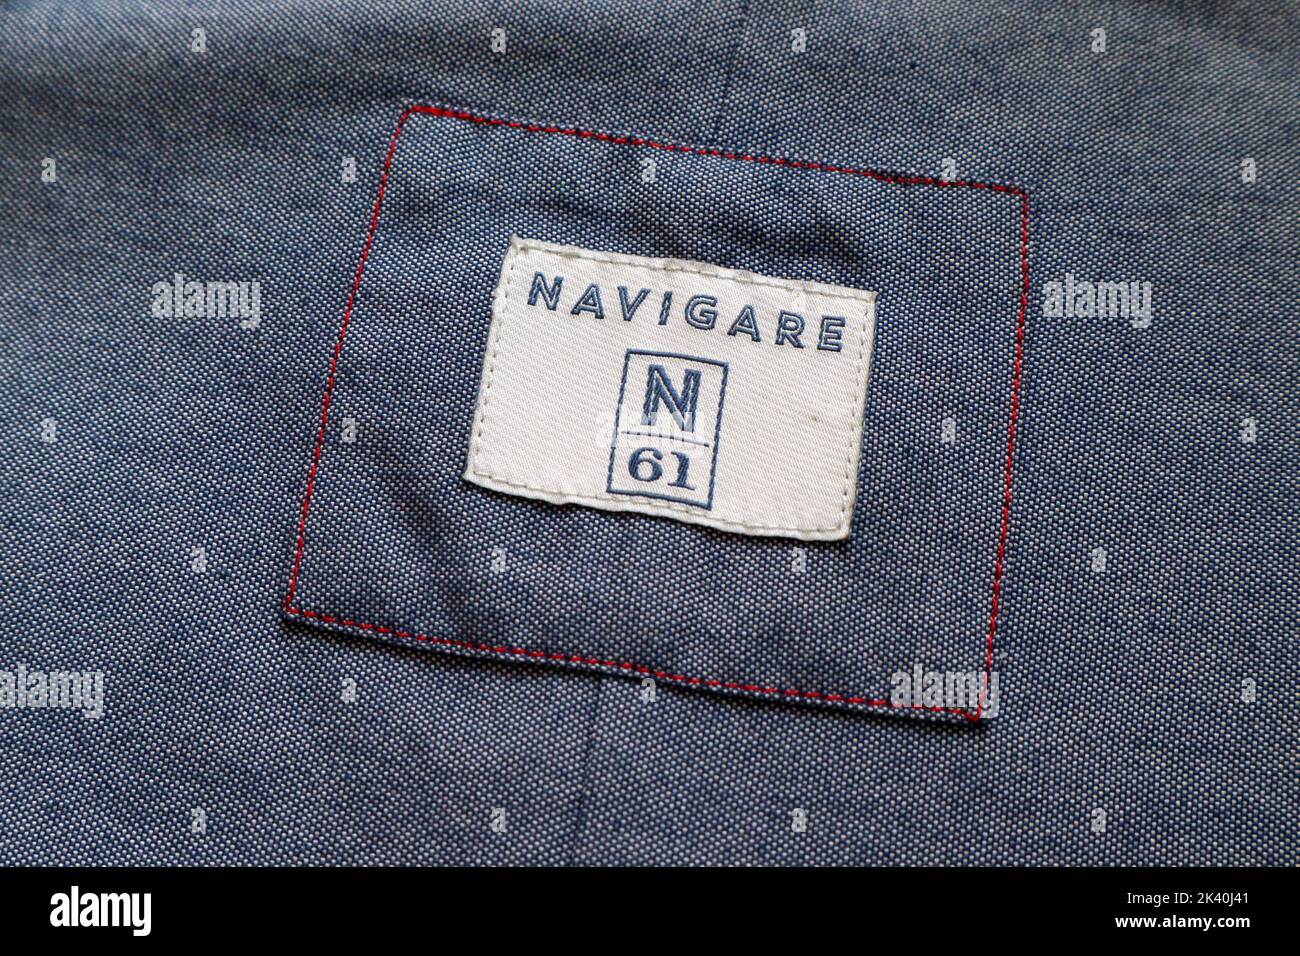 Étiquette de vêtements NAVIGARE. Navigare est une marque italienne de mode  Sportswear et Loisirs de N61 S.r.l. - Italie Photo Stock - Alamy